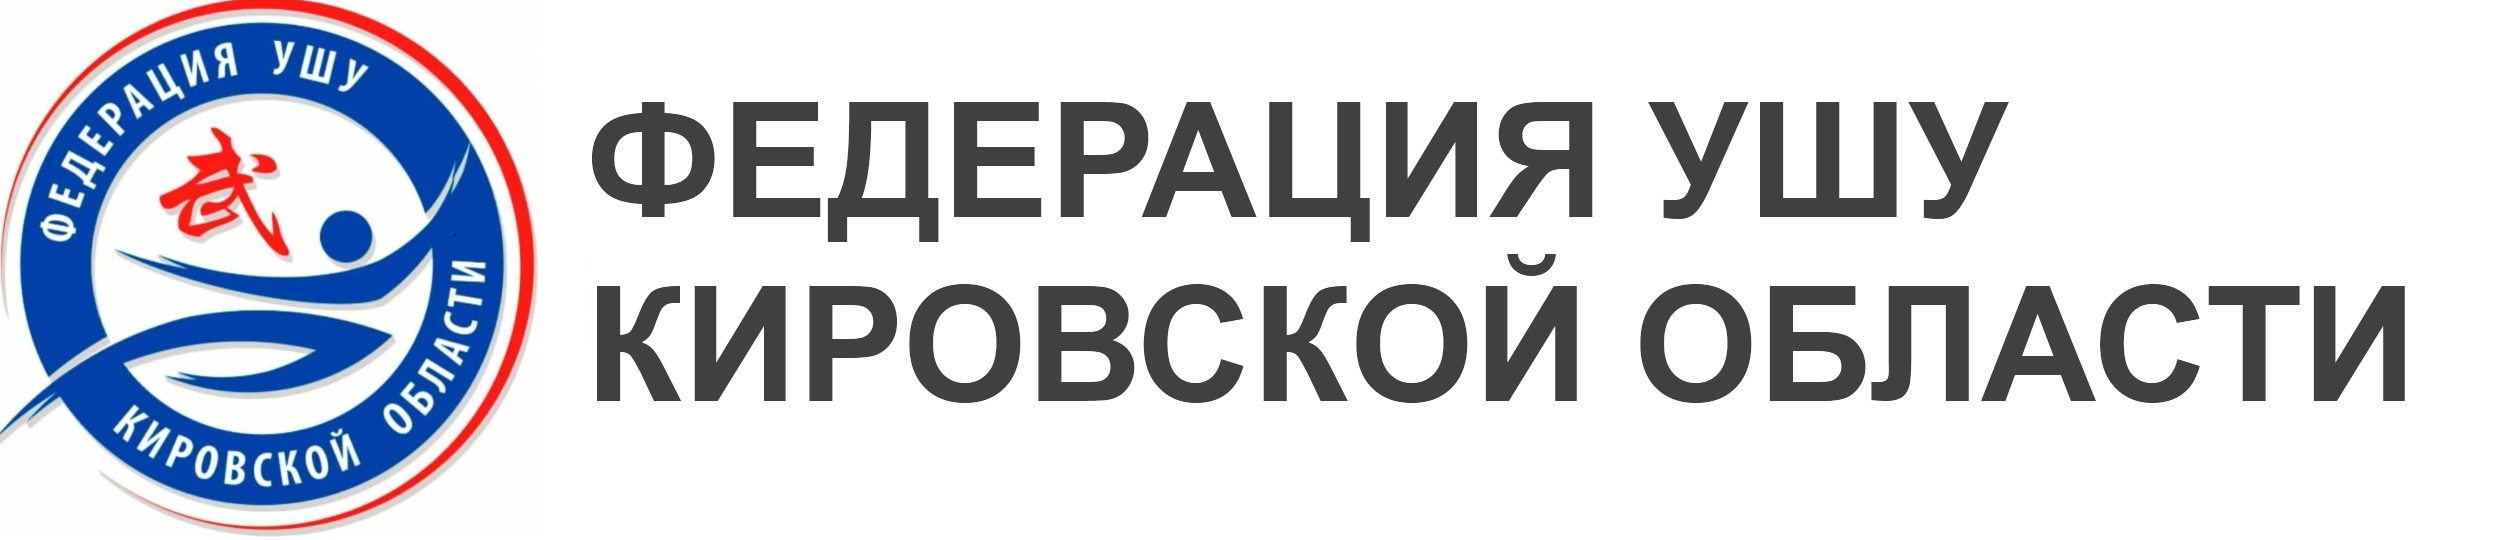 Федерация ушу Кировской области